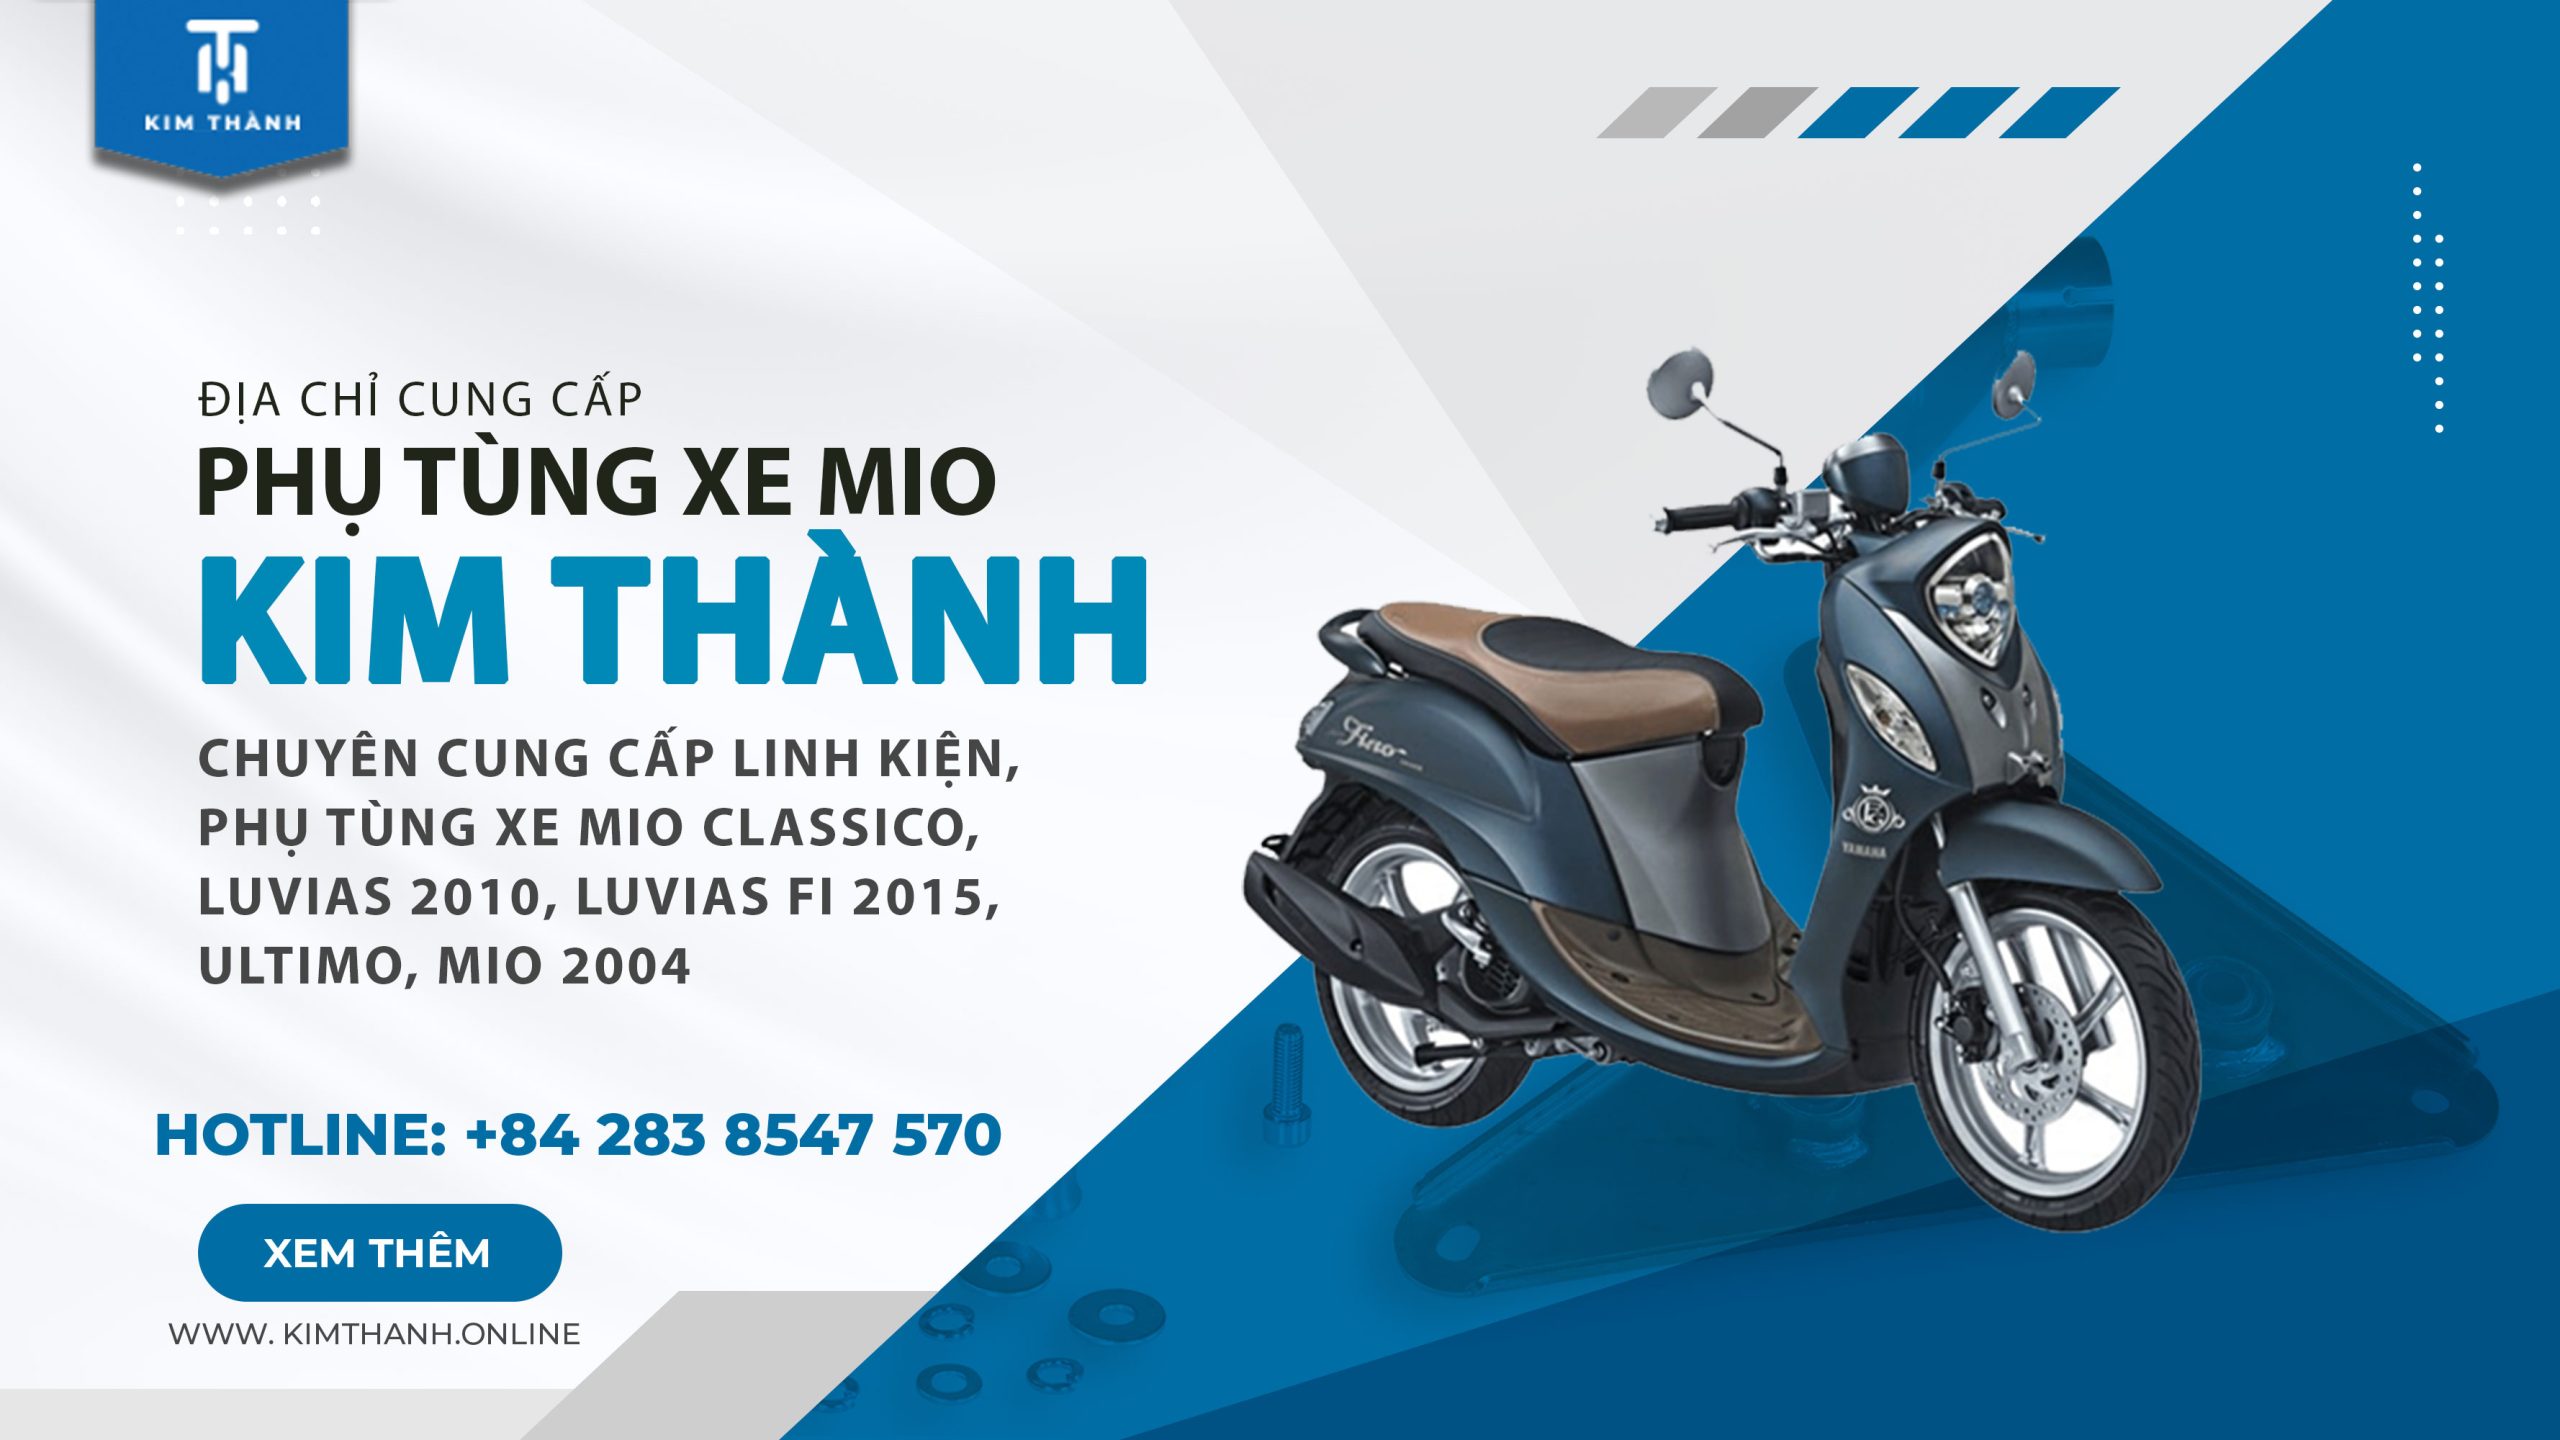 Yamaha Việt Nam chính thức giới thiệu Mio Classico